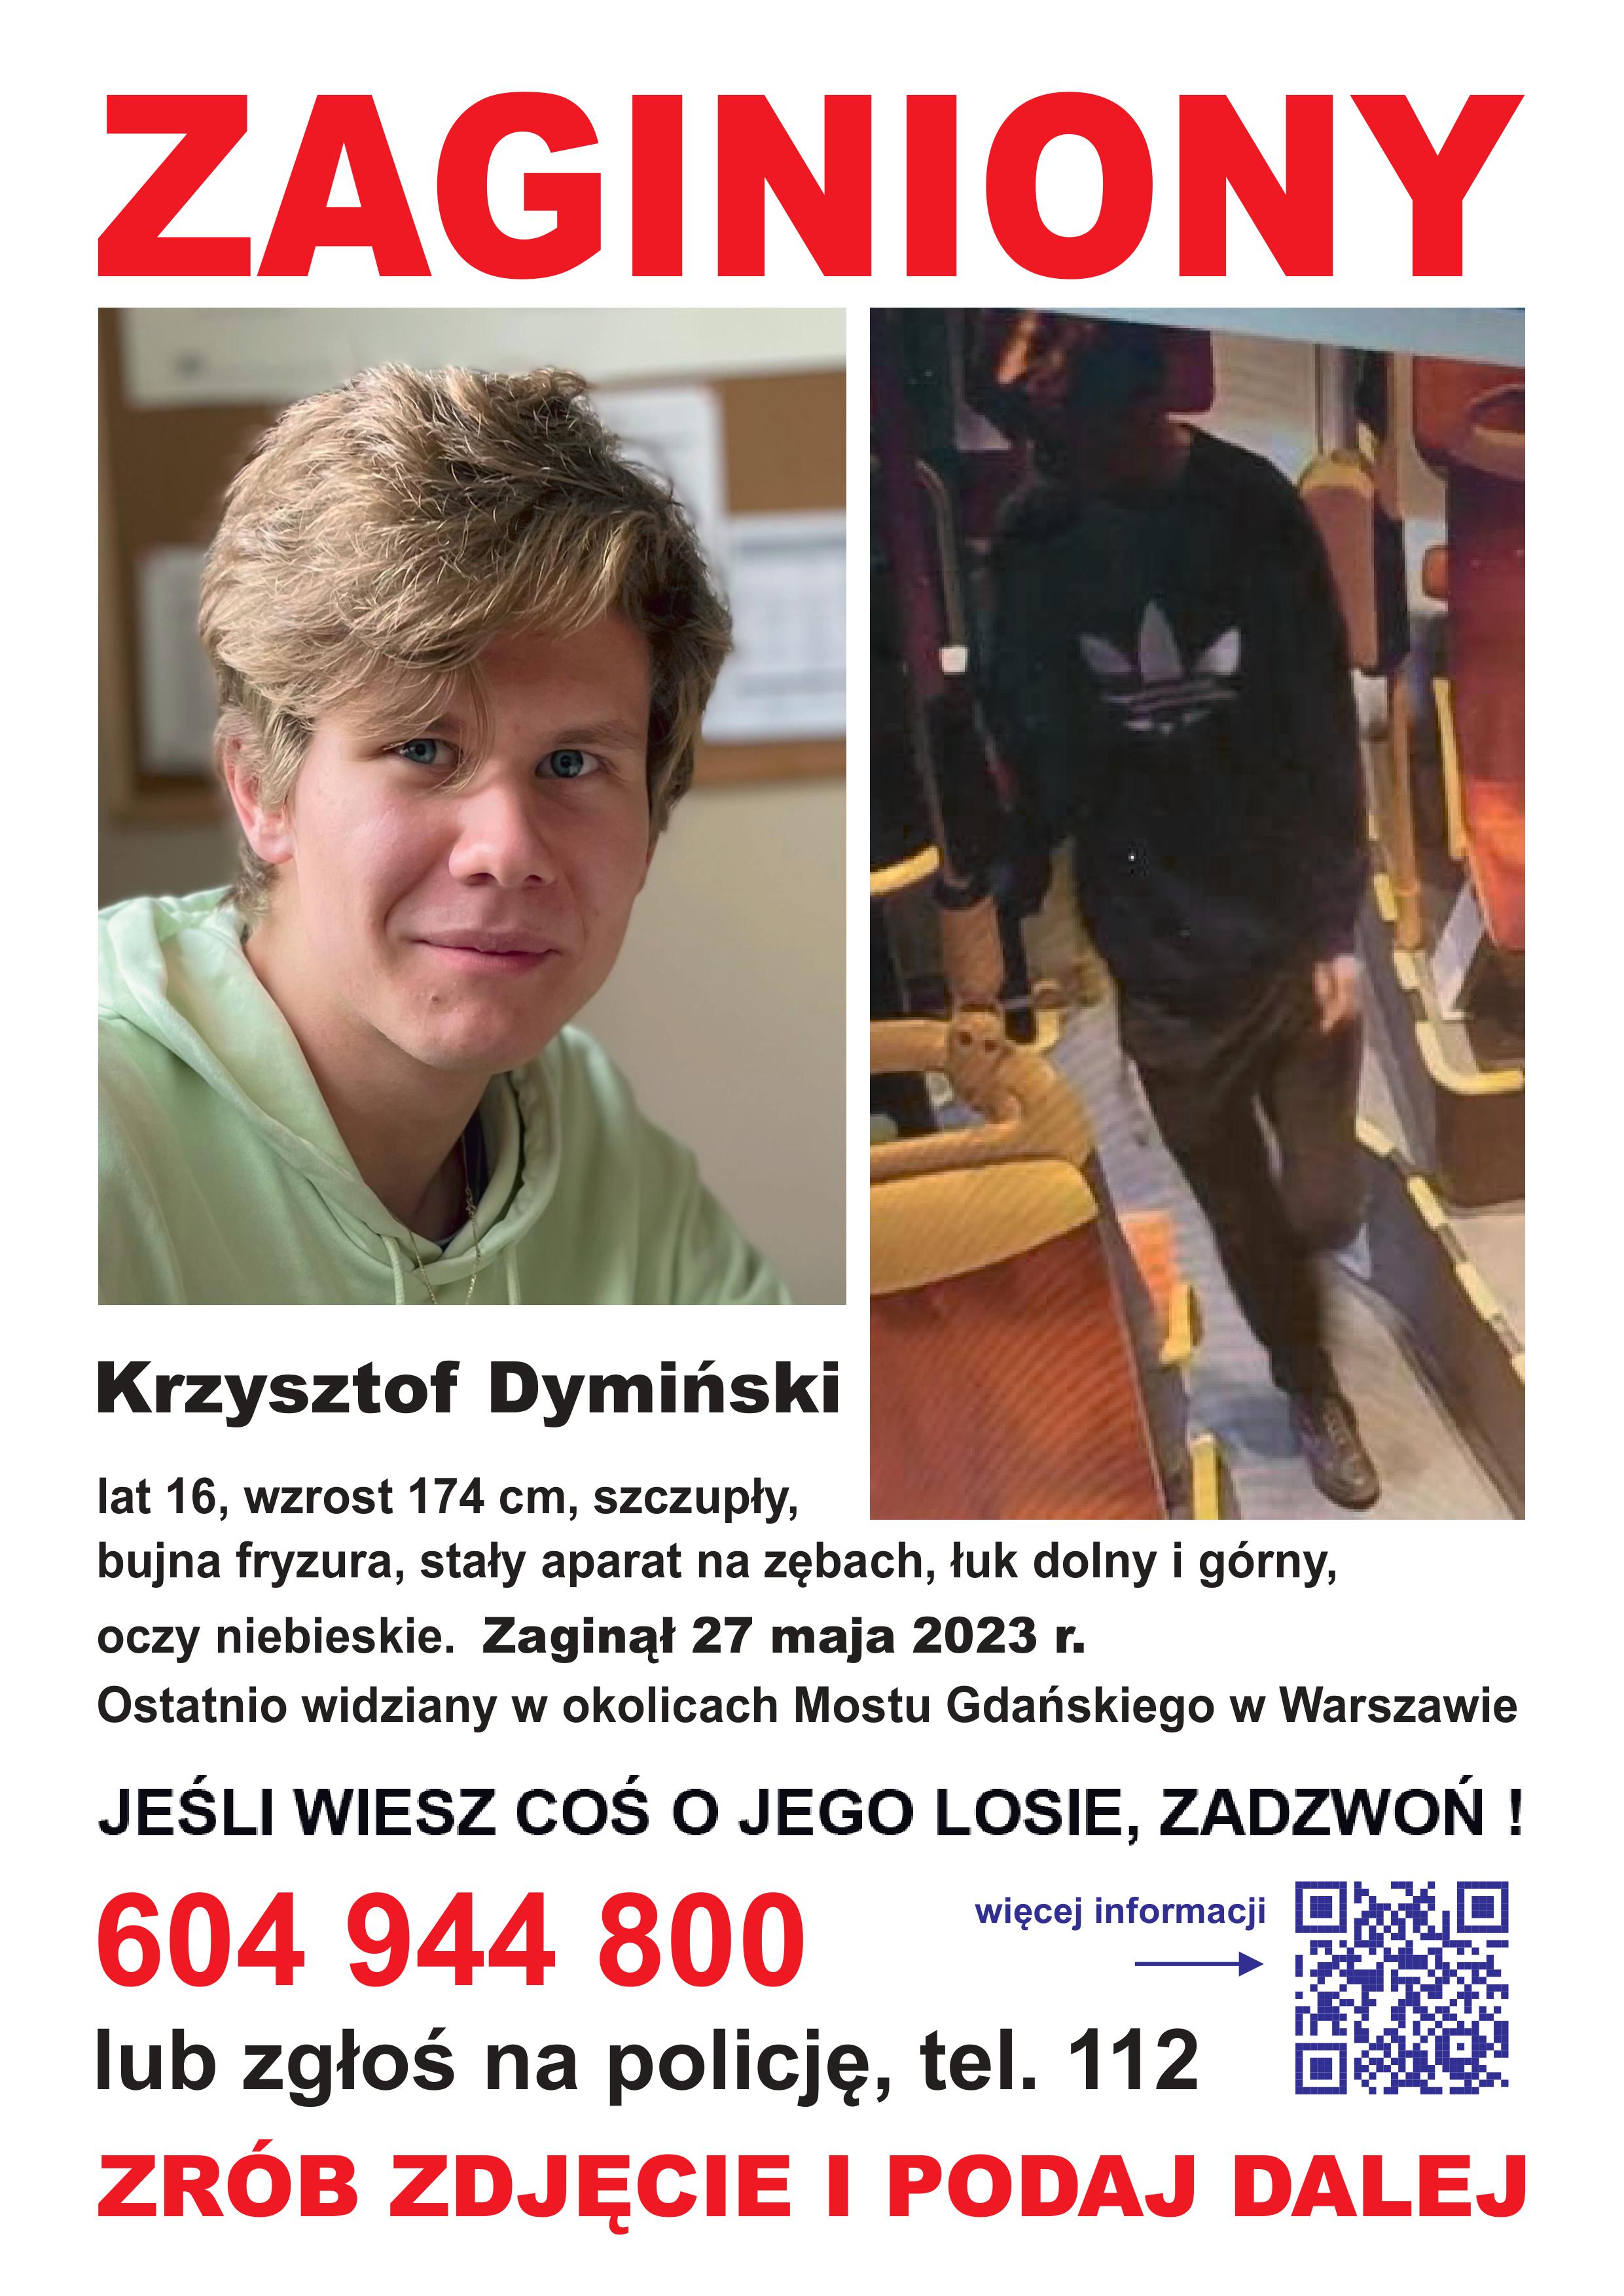 Pilna prośba - Zaginięcie Krzysztofa Dymińskiego 